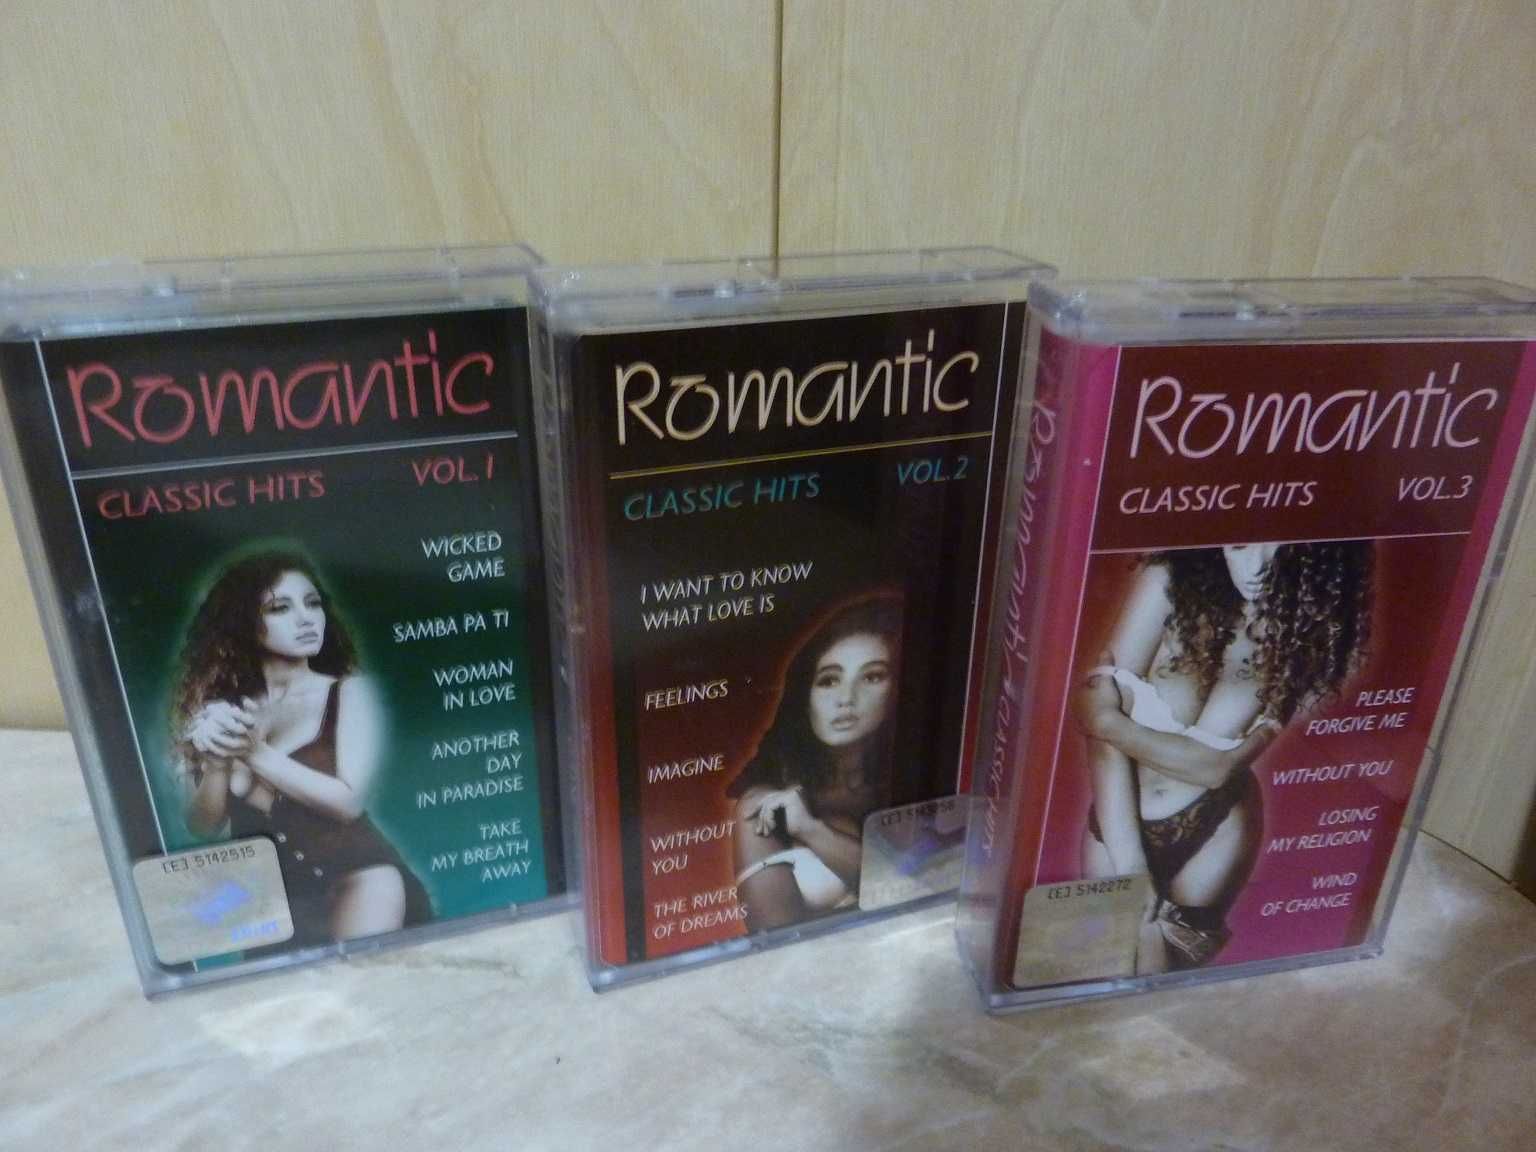 Romantic classic hits zestaw kaset vol.I+II+III MC